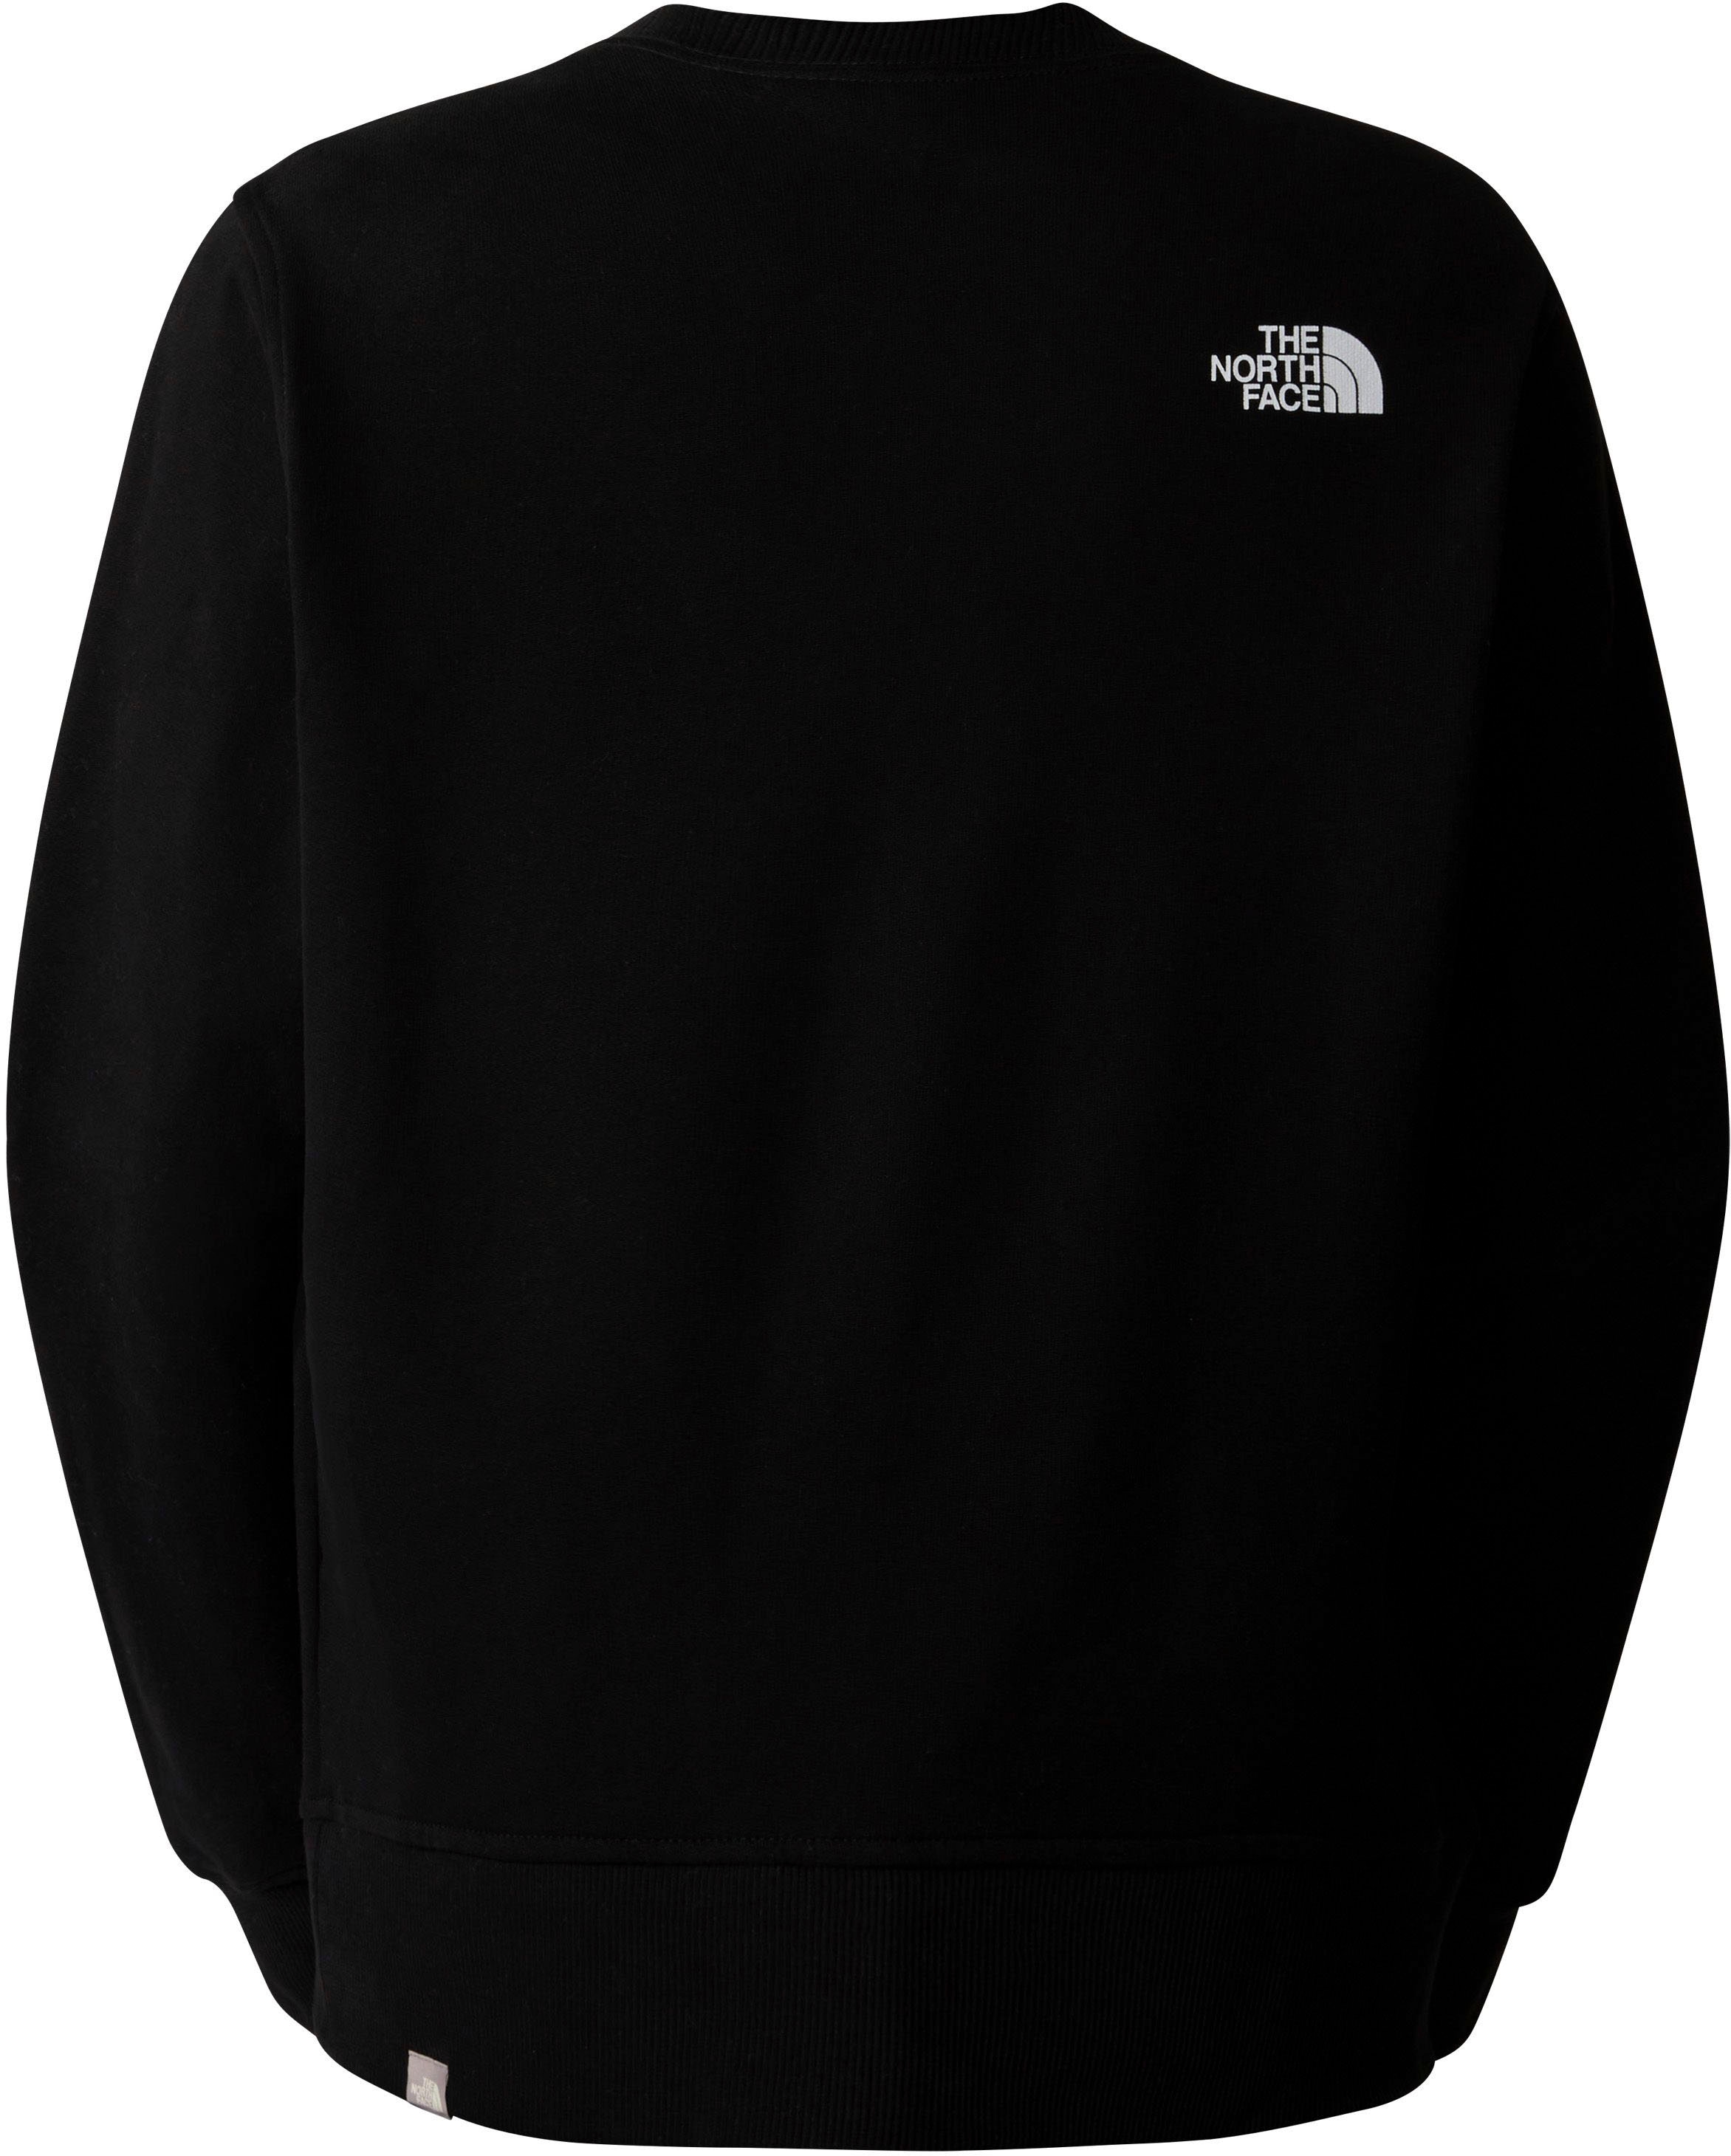 The North Face Sweatshirt »W LIGHT DREW PEAK CREW«, in schlichtem Design